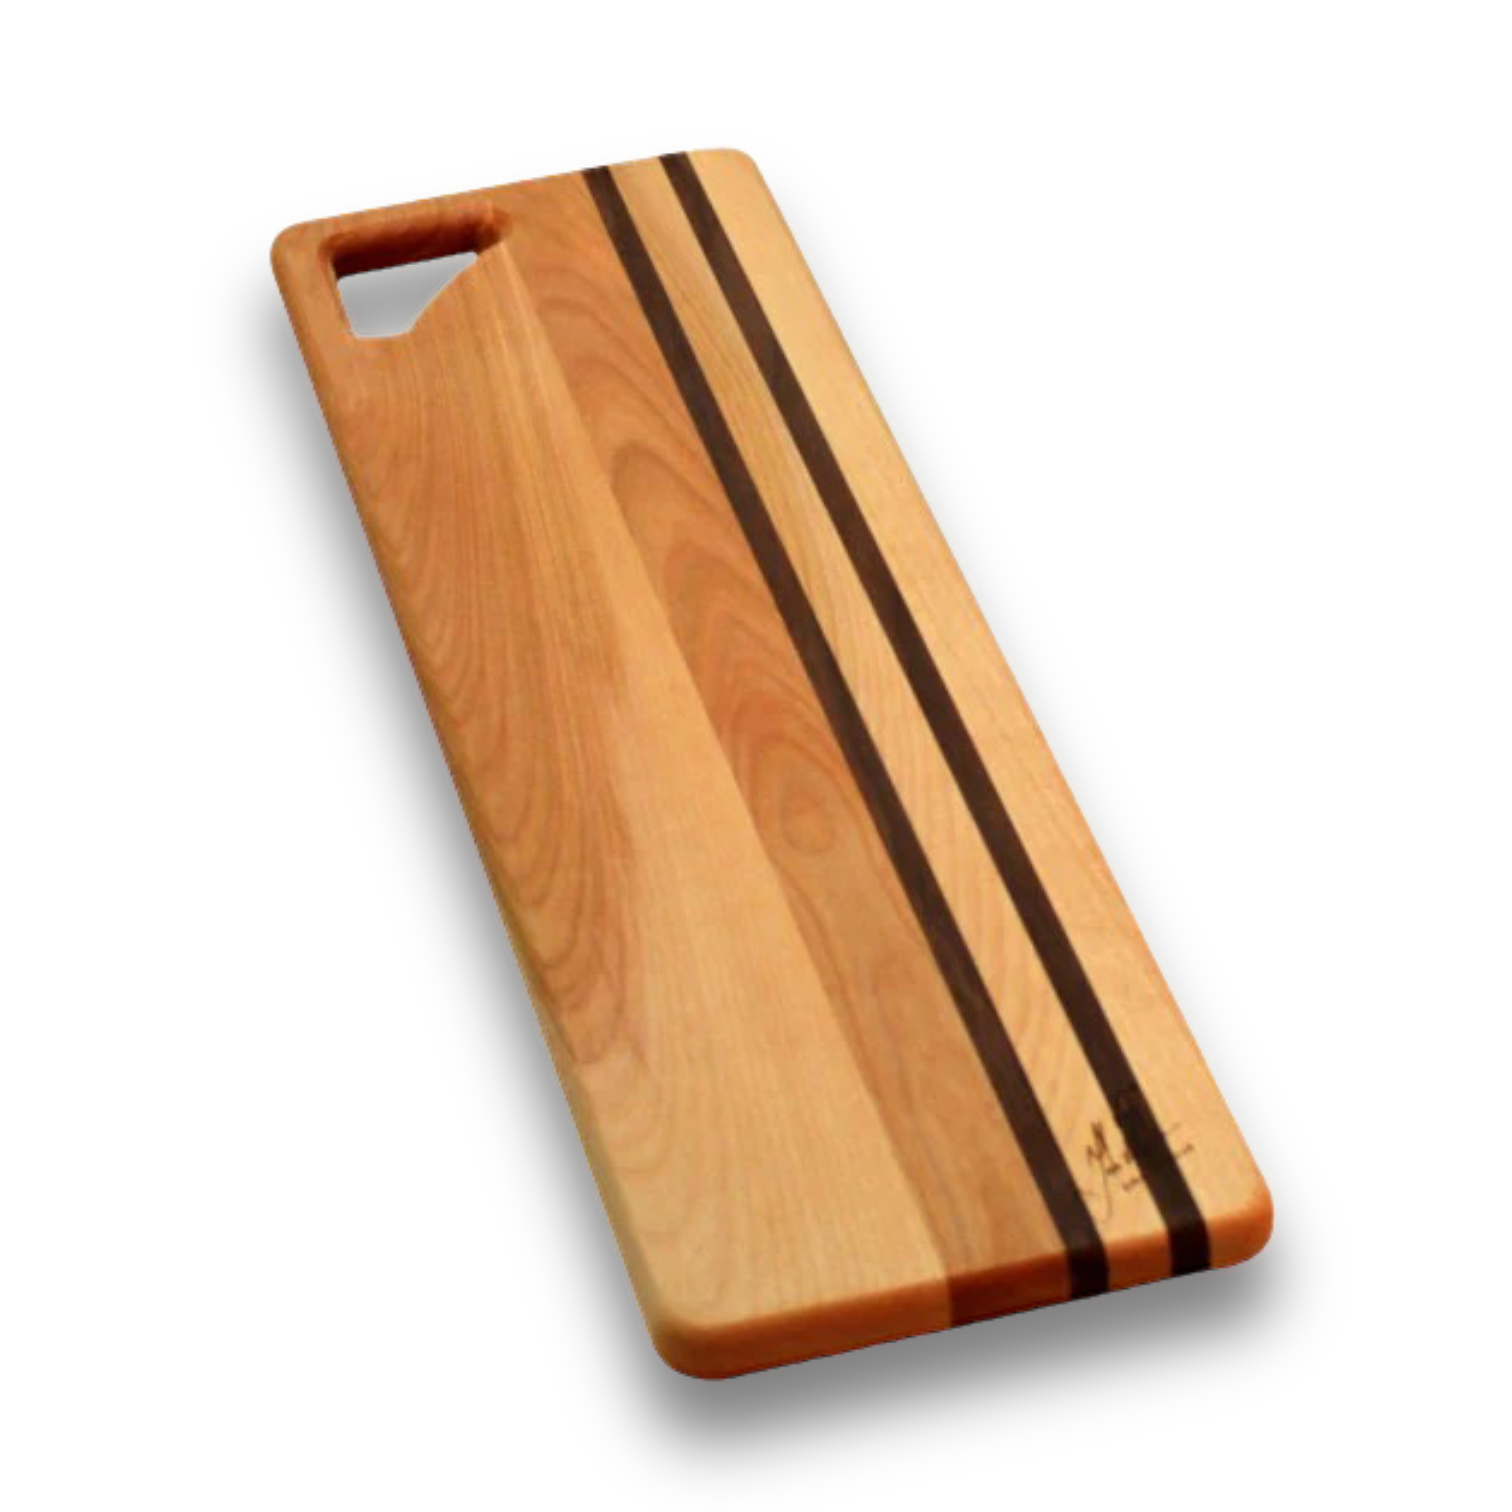 Long Wooden Bread Boards, Designed by John McLeod